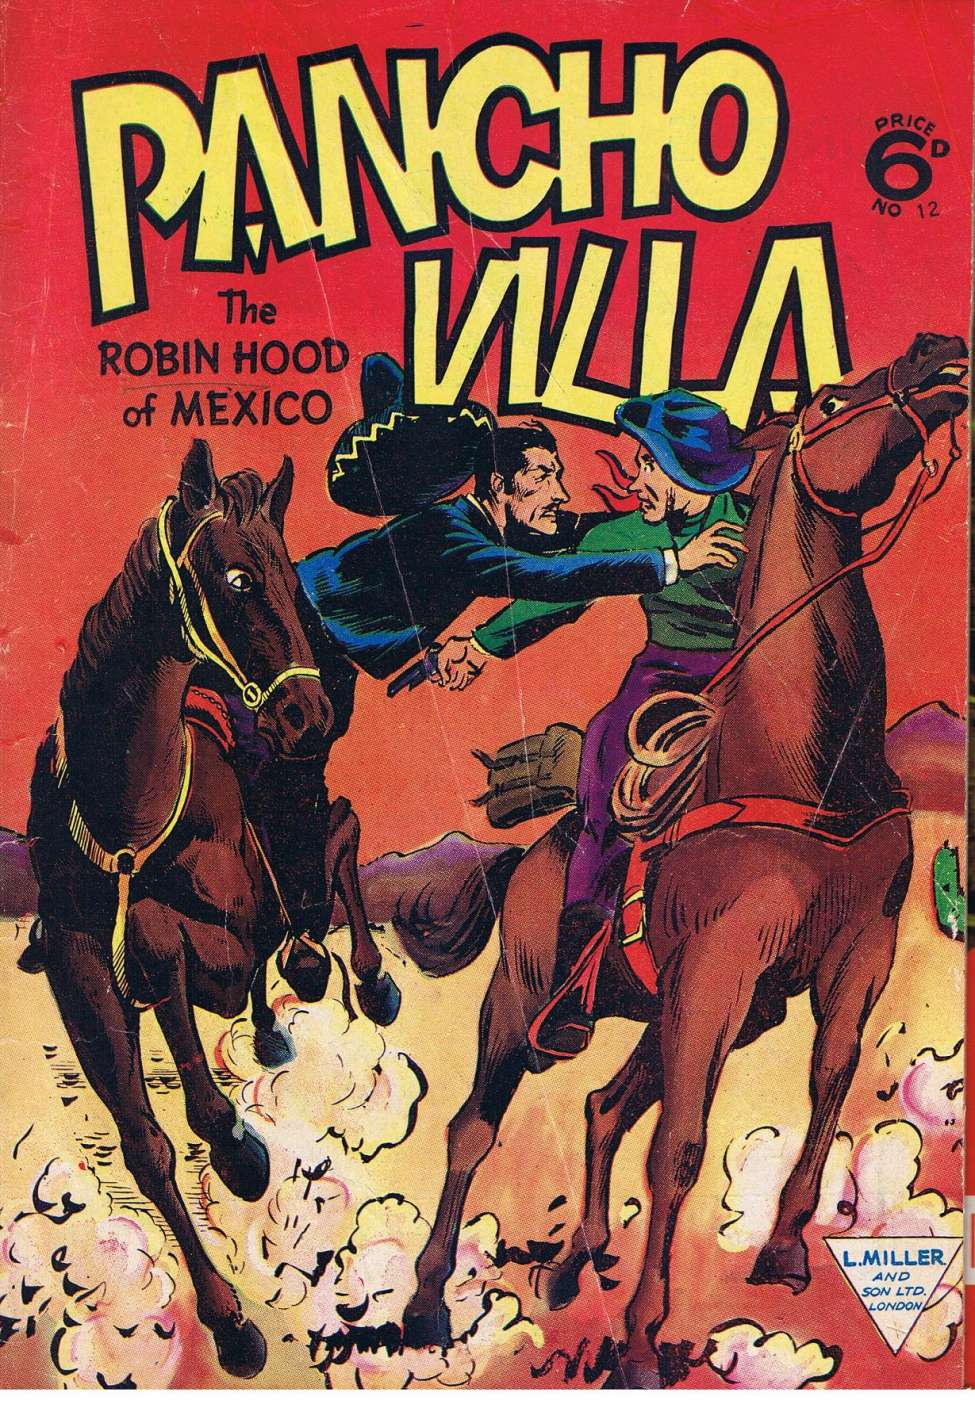 Book Cover For Pancho Villa 12